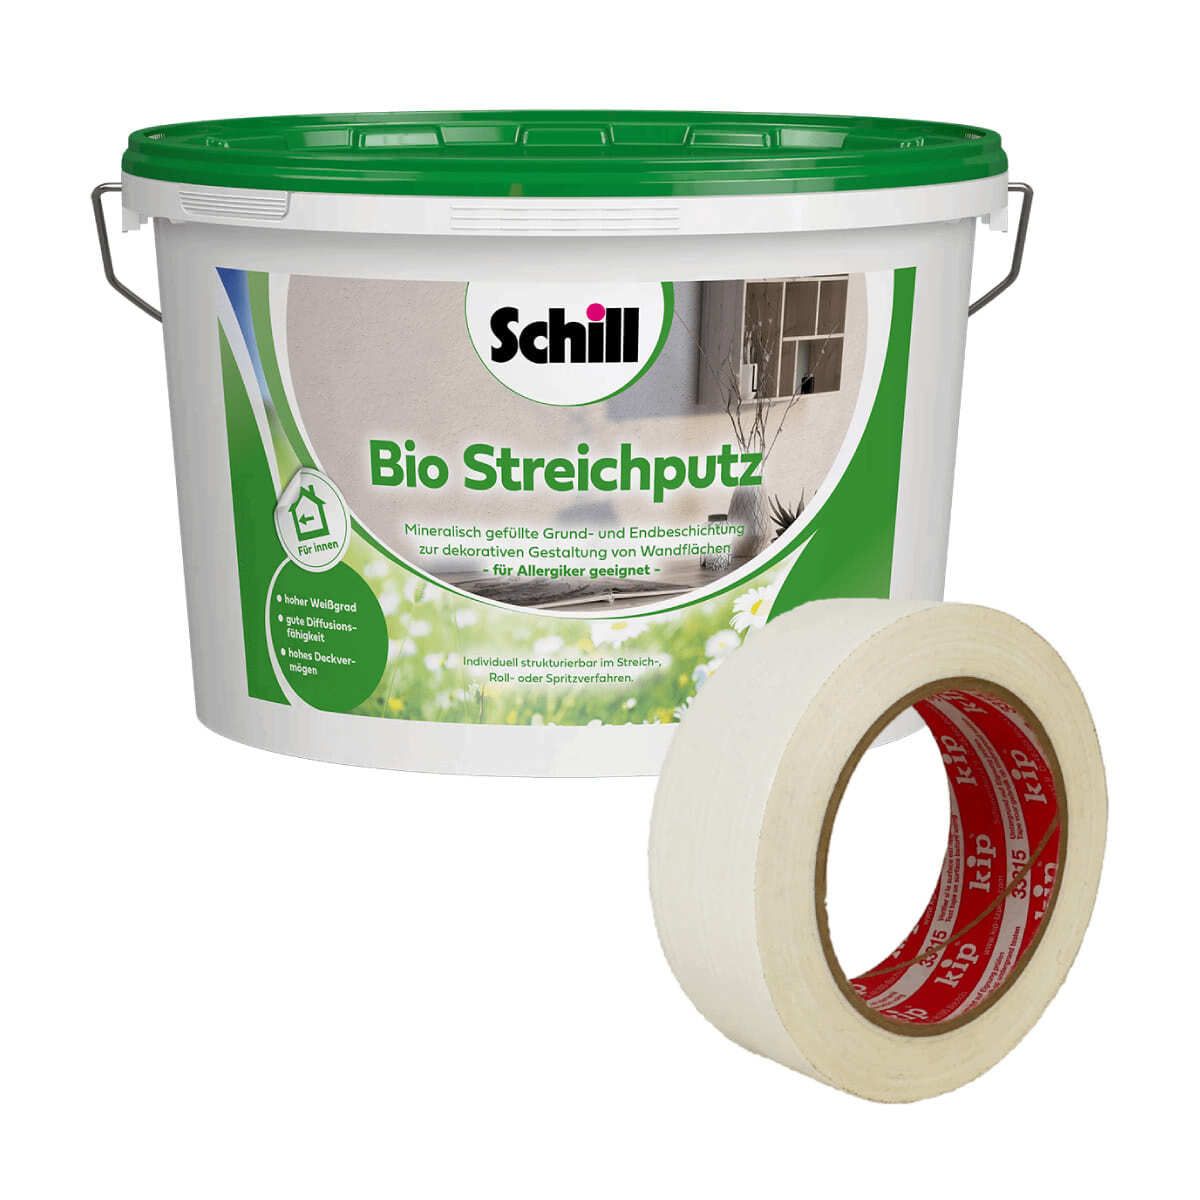 Schill Bio Streichputz plus Kip 3315 Verputzerband von FPT Group GmbH